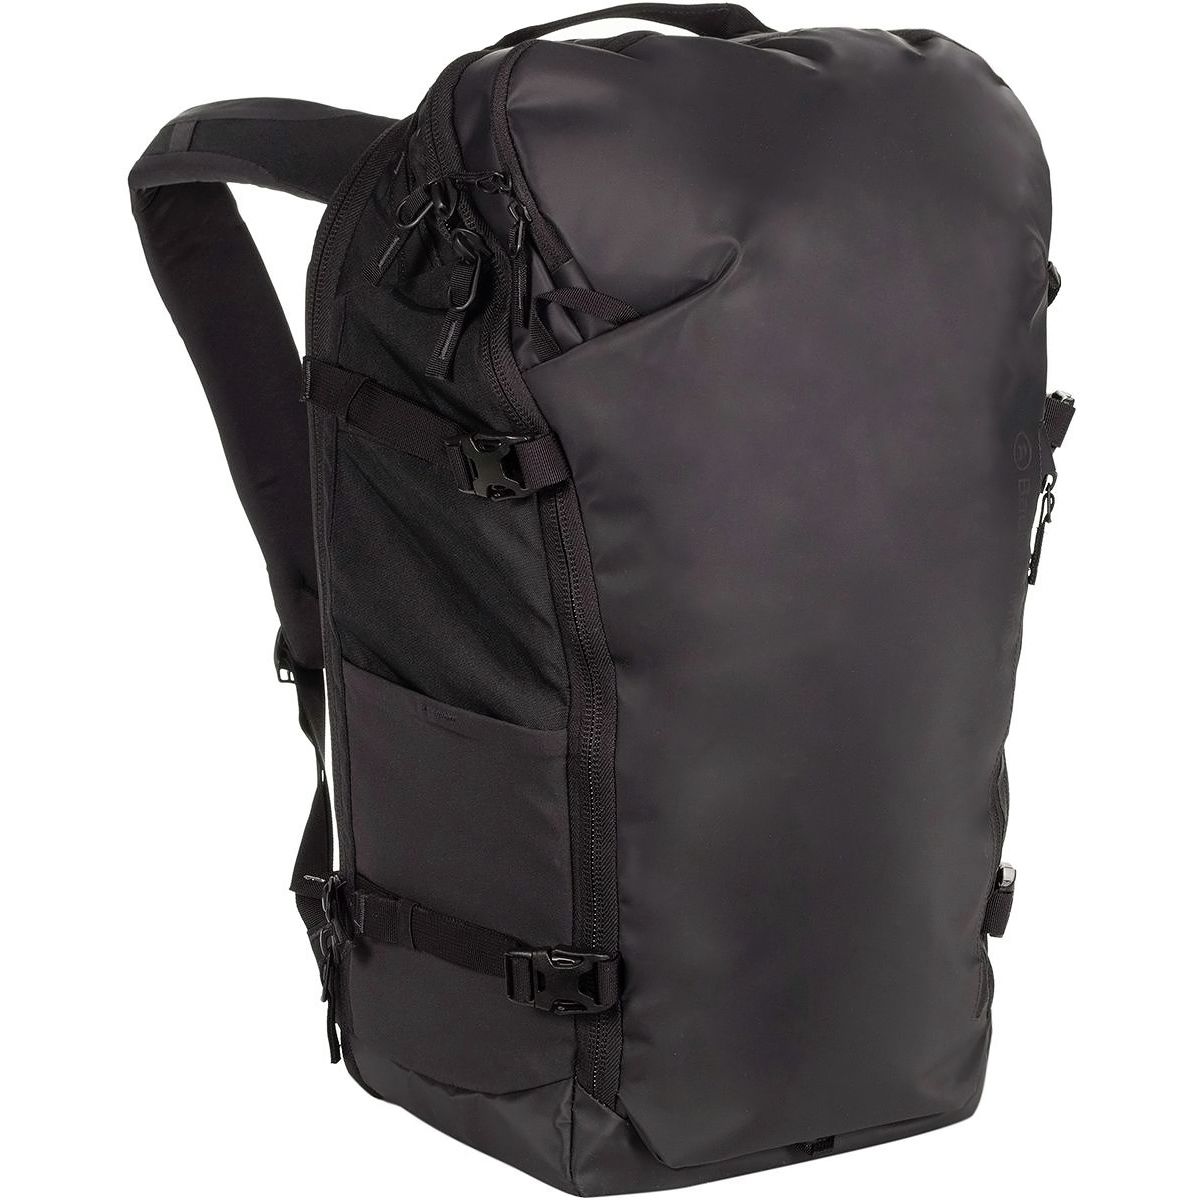 Backpacks: JUST BACKPACK VEGA BLACK (20L)